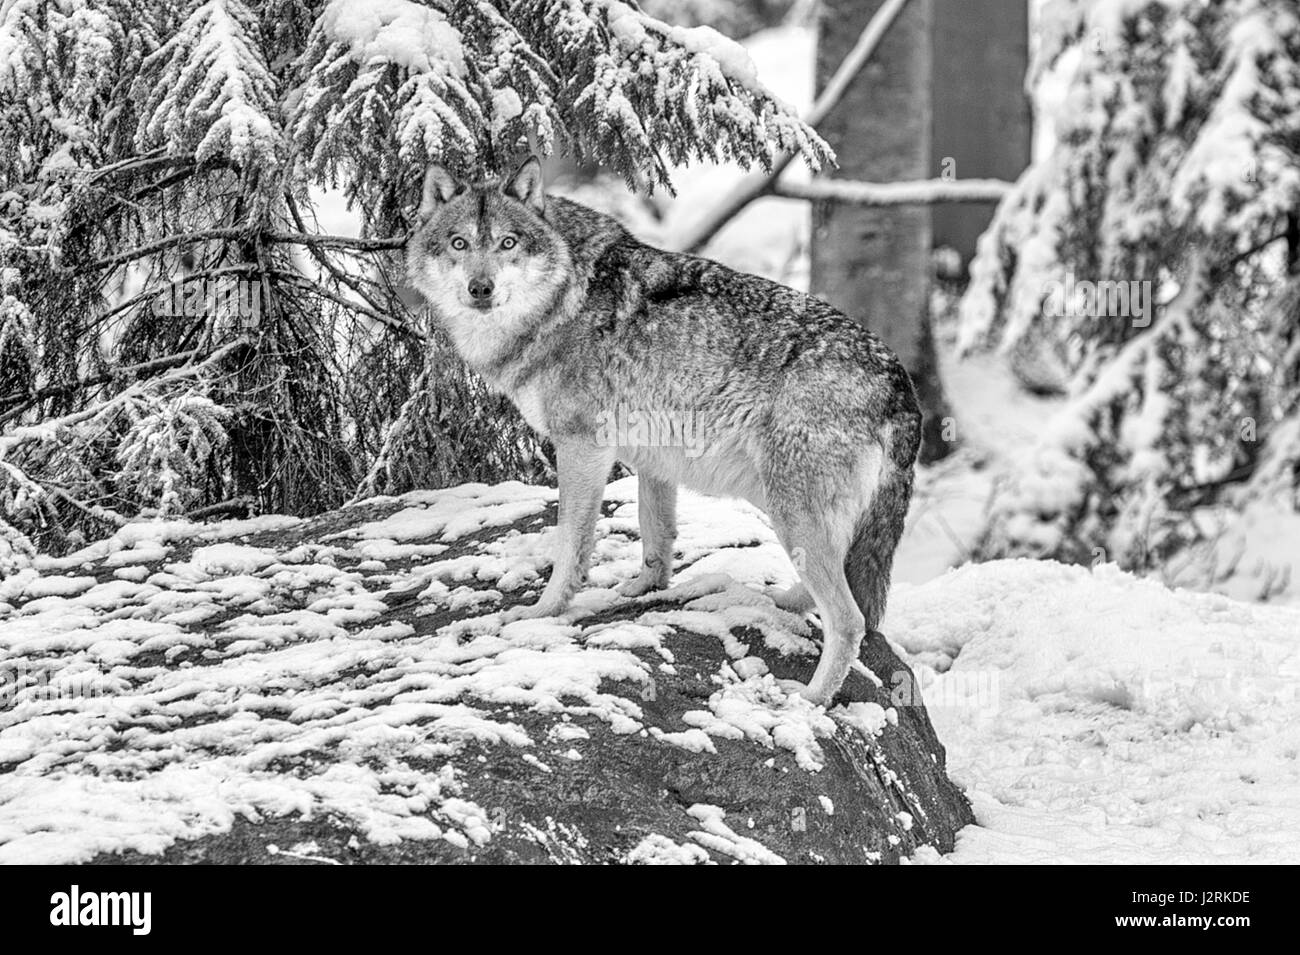 Belle adulte seul loup gris (Canis lupus) représenté dans des bois enneigés au milieu de l'hiver. (Beaux-arts, High Key, noir et blanc) Banque D'Images